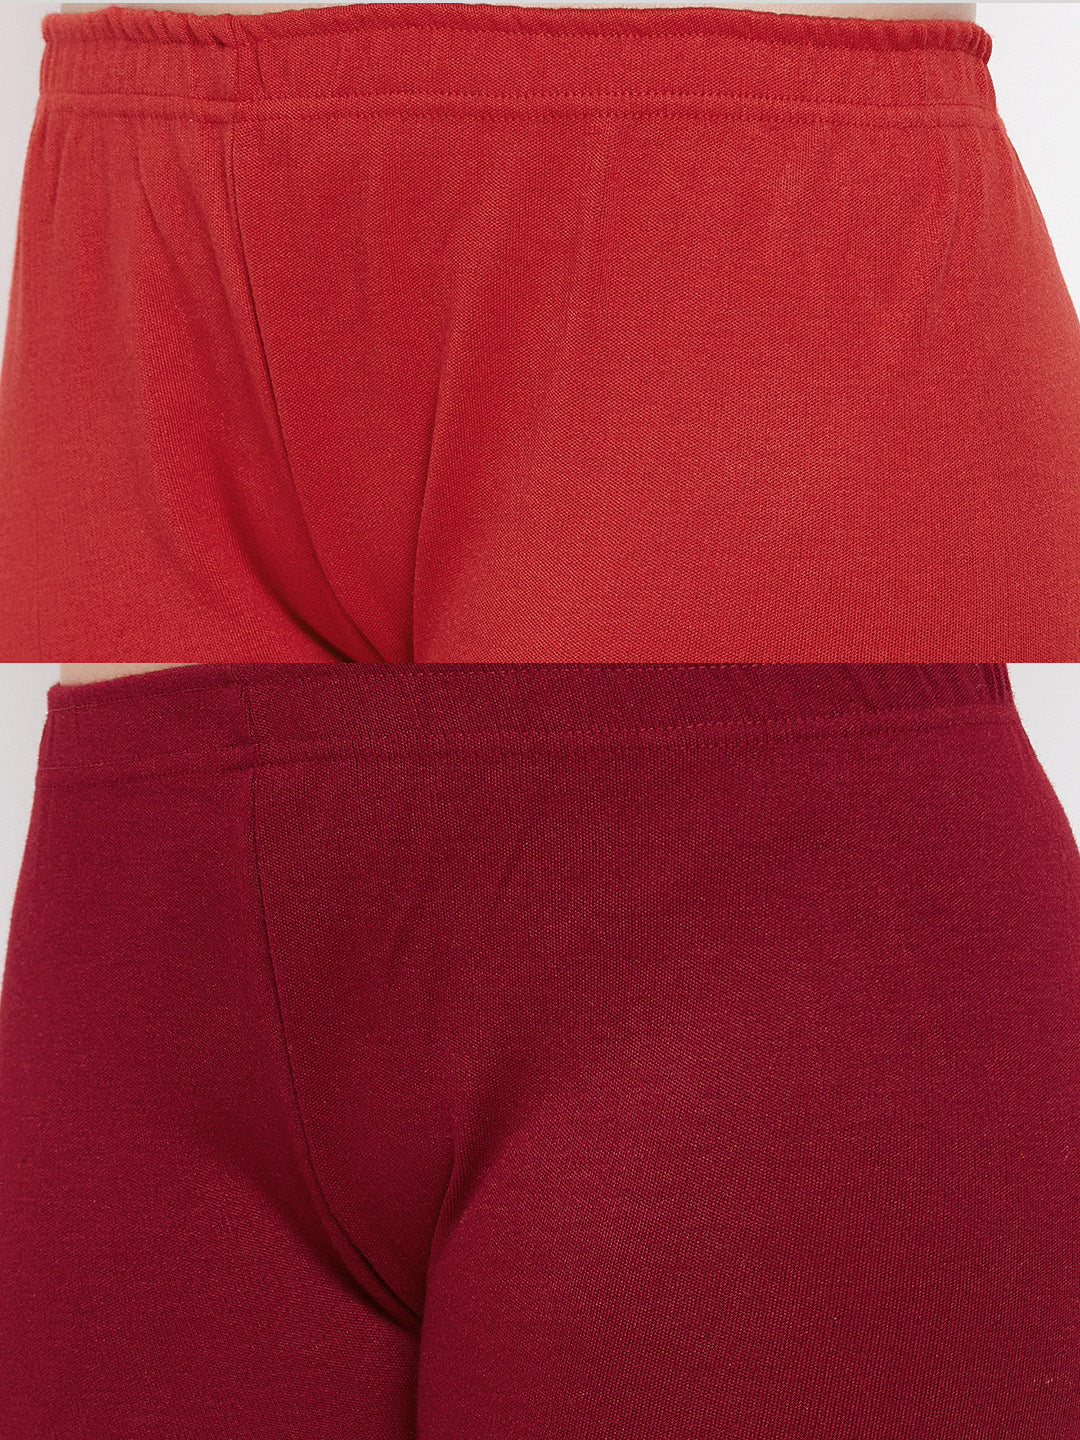 Clora Red & Maroon Solid Woolen Leggings (Pack Of 2)